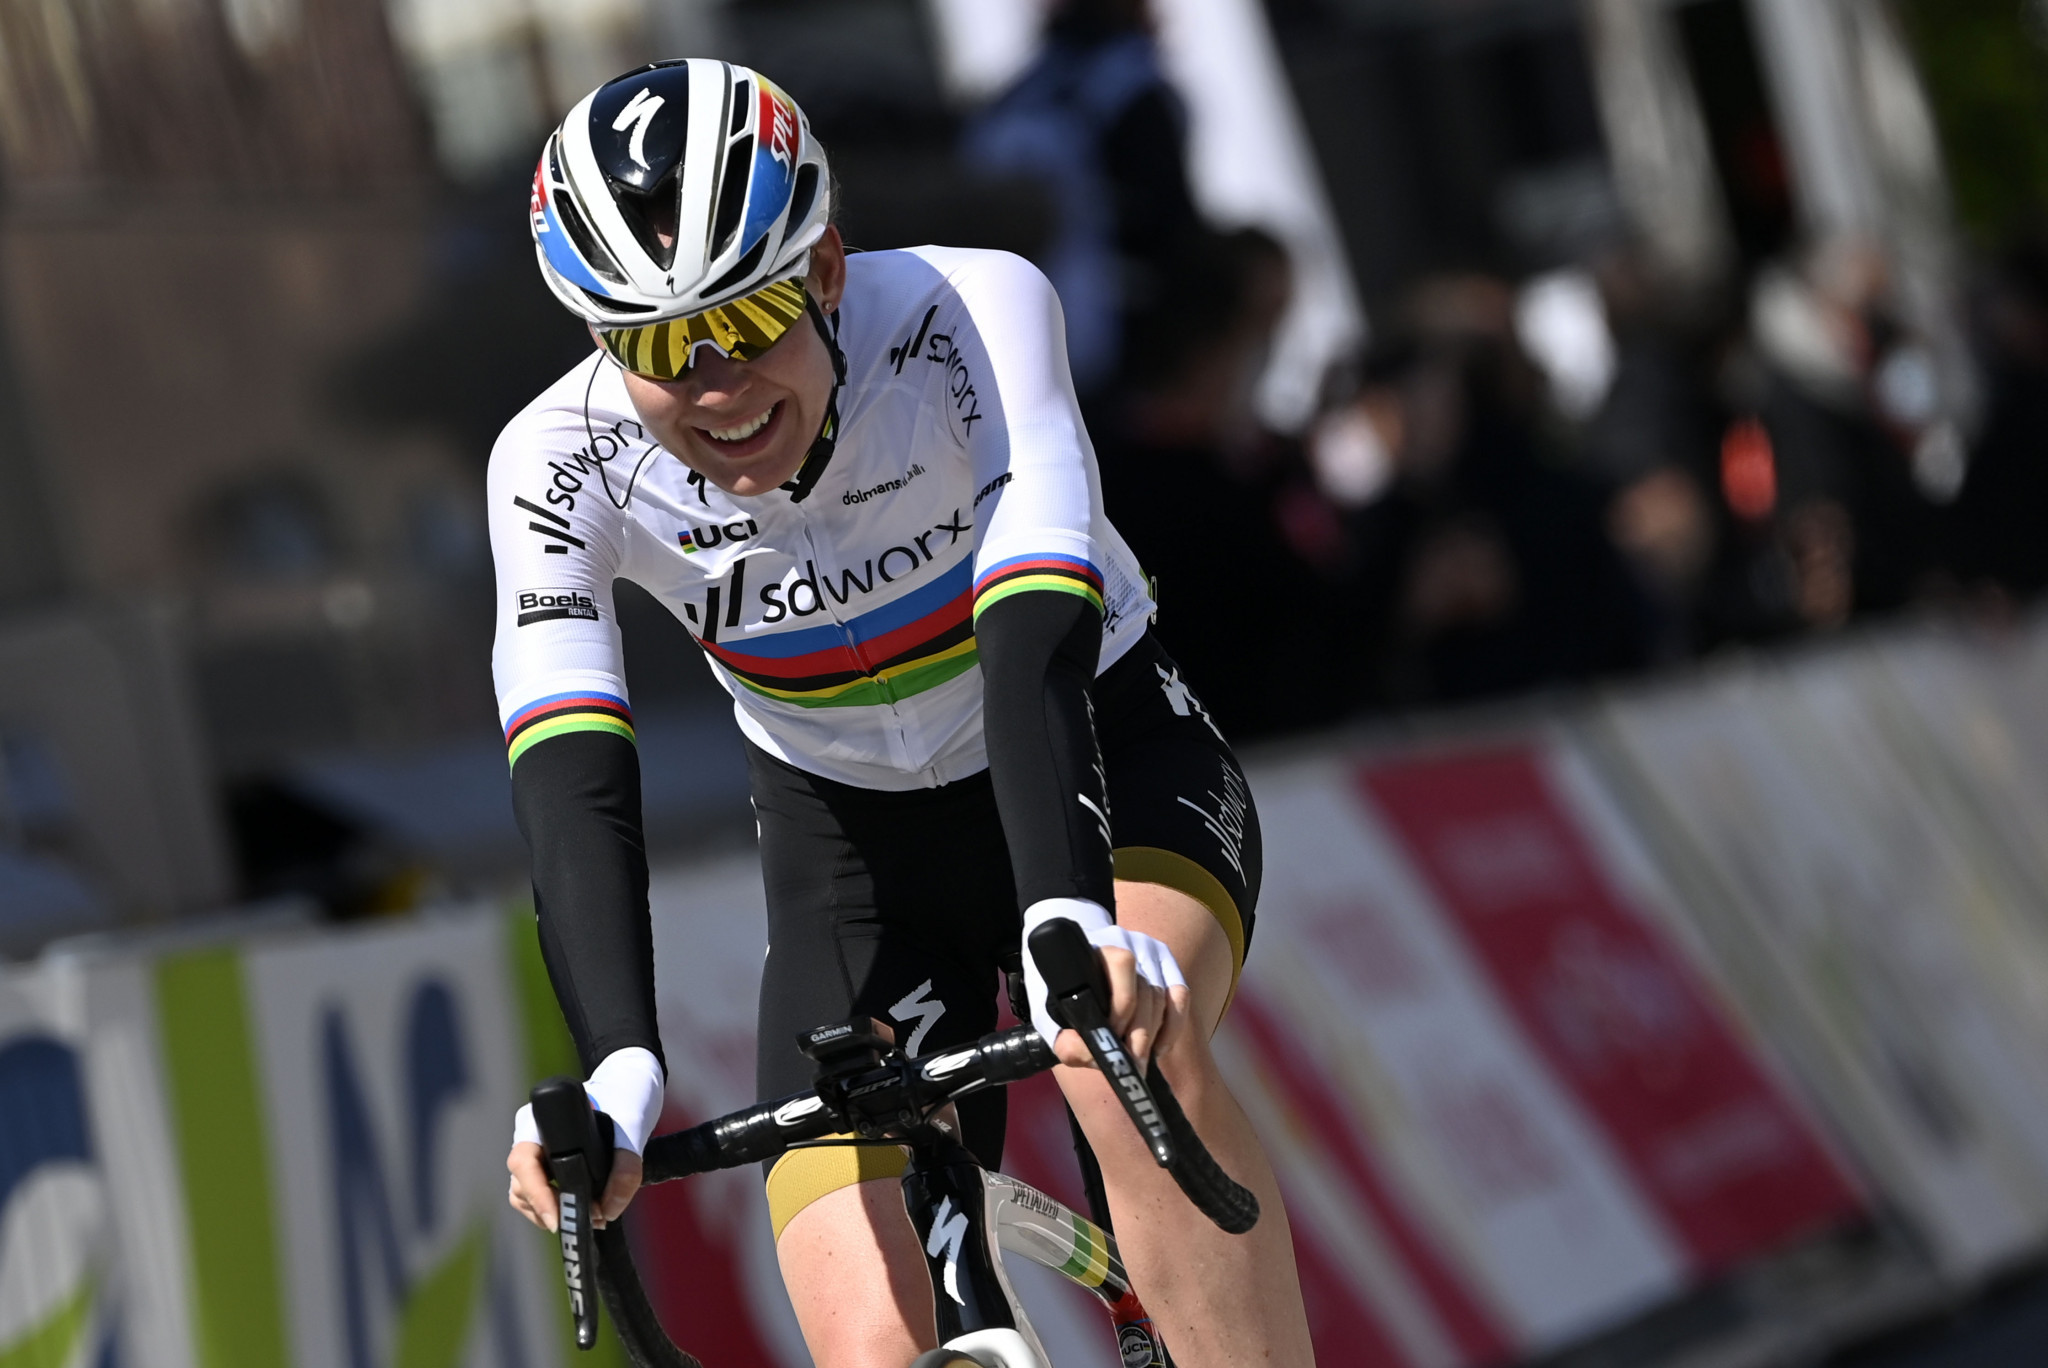 Anna van der Breggen won her fourth Giro Donne title today ©Getty Images